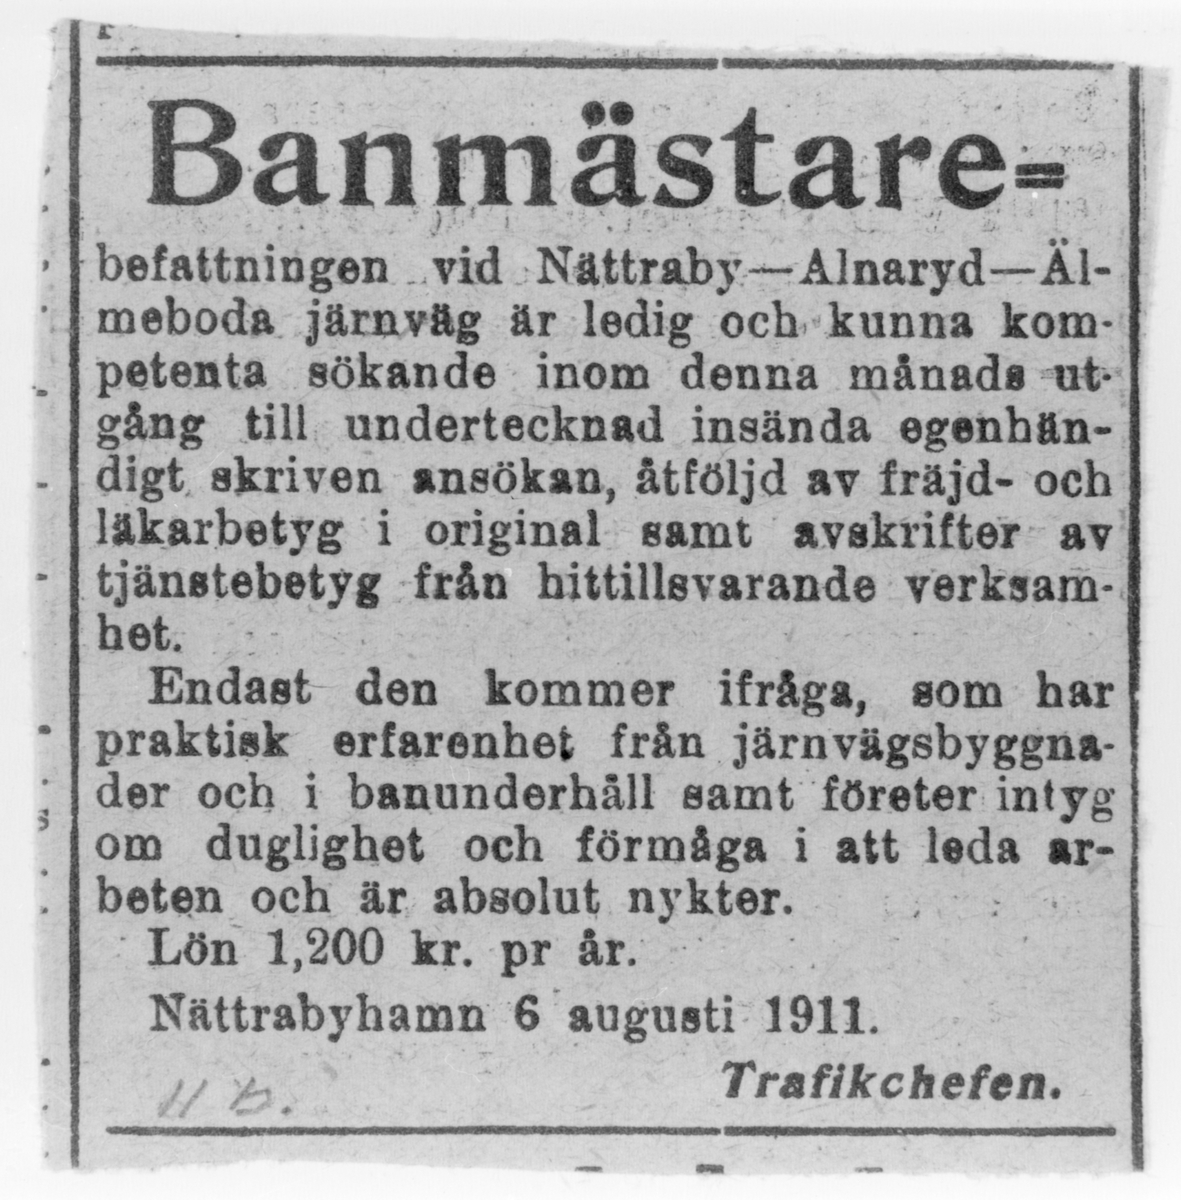 Annons där banmästare sökes till Nättraby - Alnaryd - Älmeboda Järnväg, NAEJ den 6 augusti 1911.